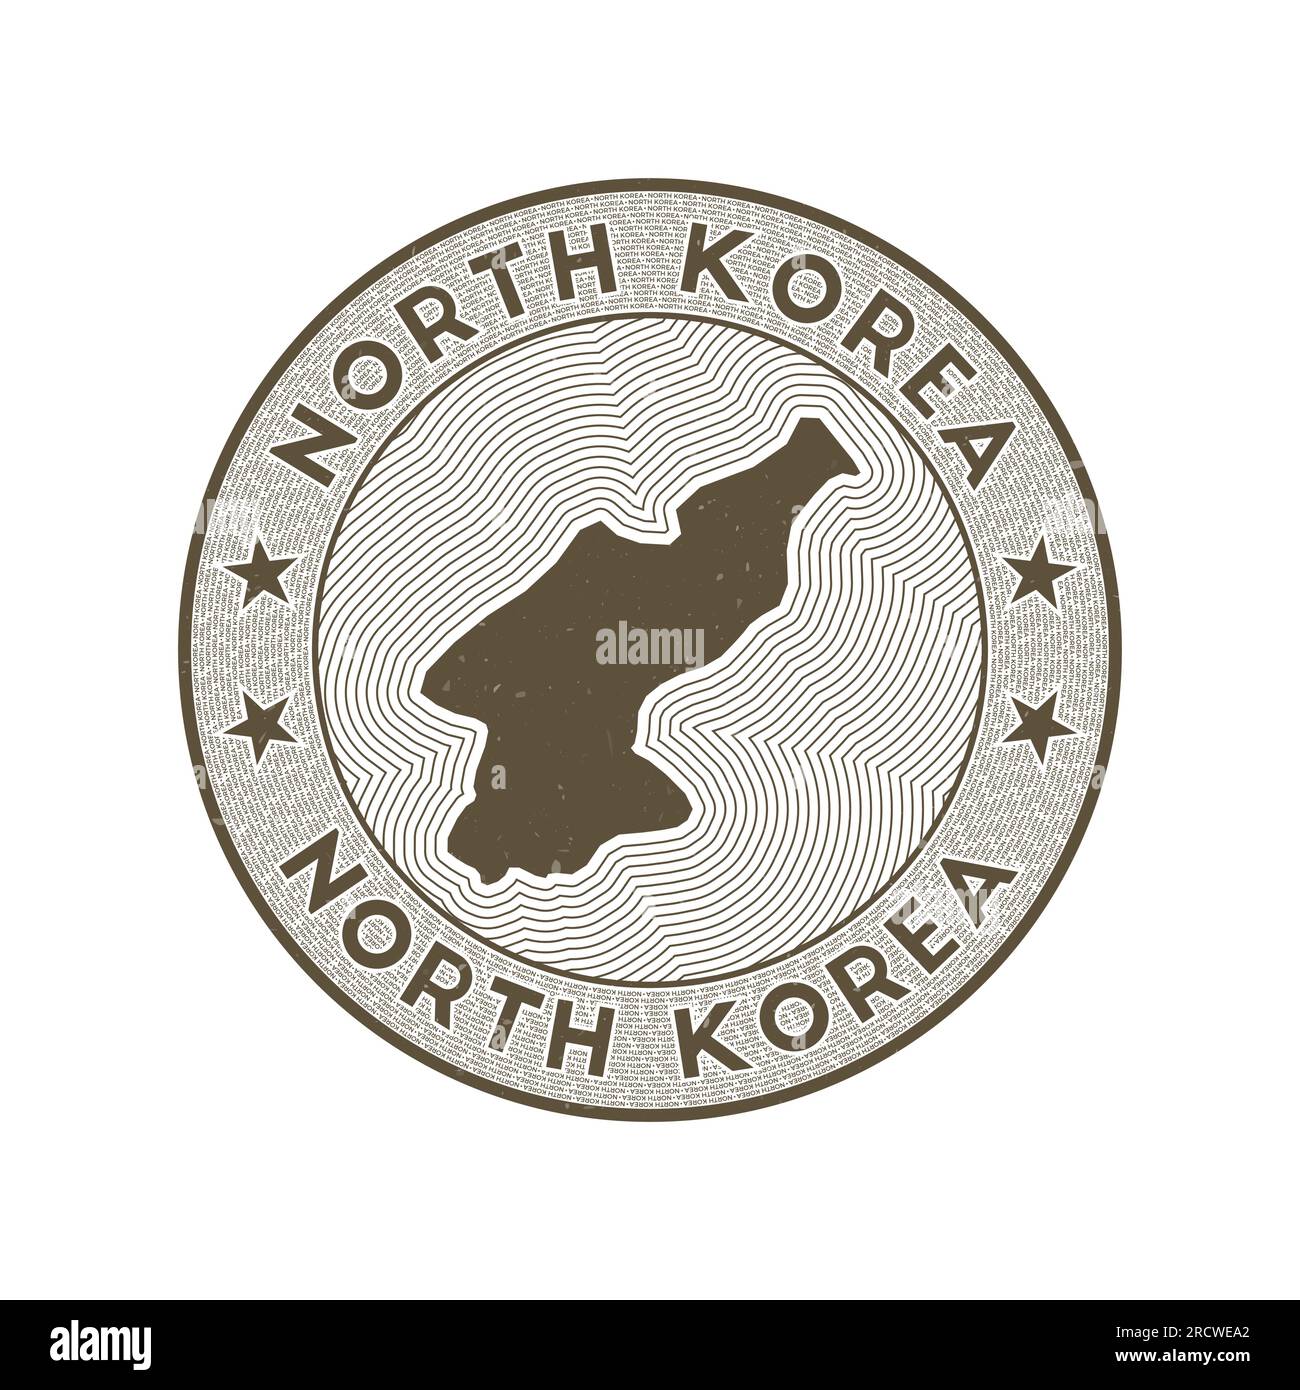 Vecteur de badge rond de Corée du Nord. Timbre rond de pays avec la forme de la Corée du Nord, les isolines et le nom circulaire du pays. Emblème artistique. Vecteur attrayant i Illustration de Vecteur